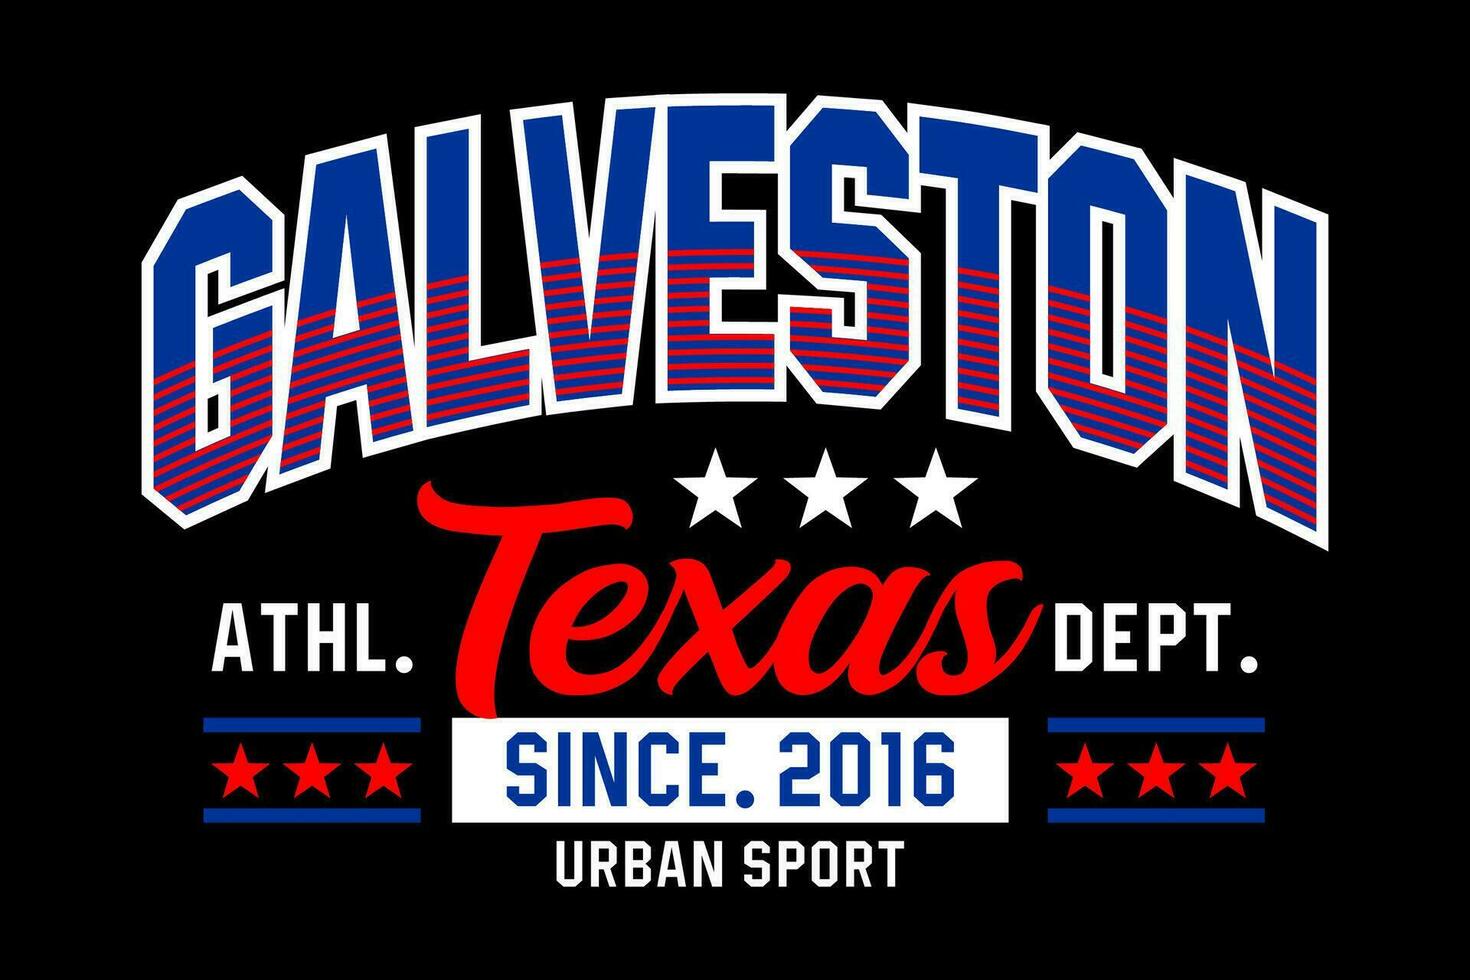 Galveston Texas Jahrgang Hochschule, zum drucken auf t Hemden usw. vektor